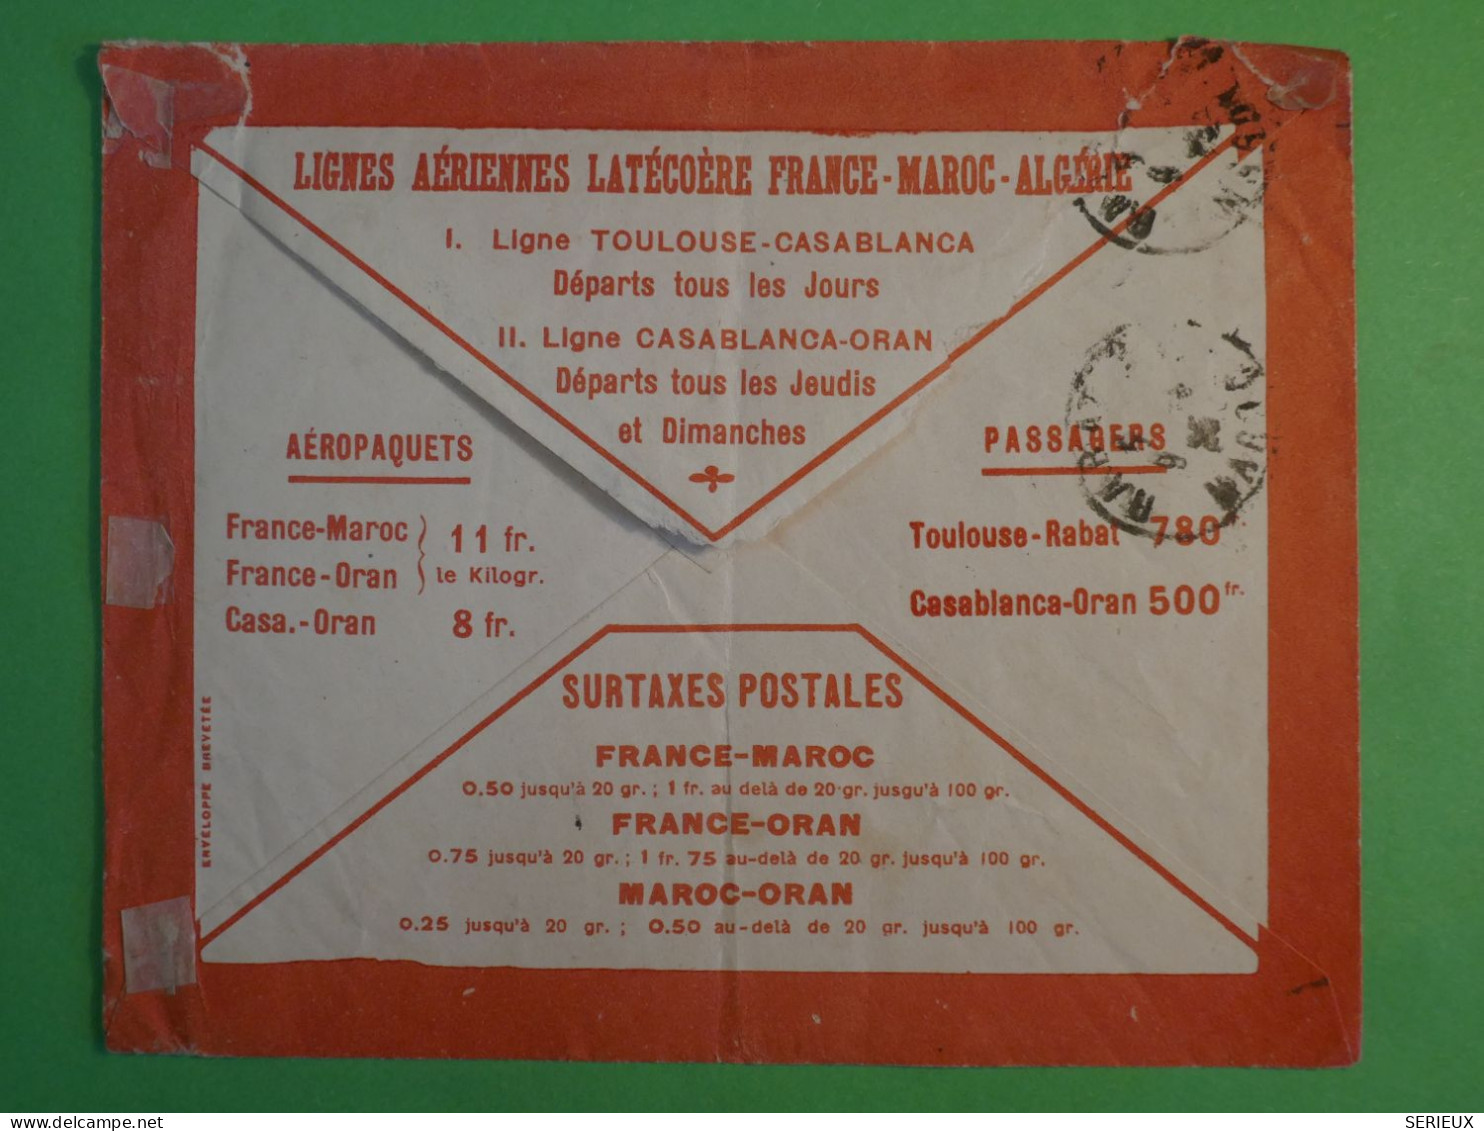 BW17  MAROC   BELLE  LETTRE  PUB. 1930 PETIT BUREAU KENITRA   A  PARIS FRANCE  +AFF. INTERESSANT+++ - Airmail